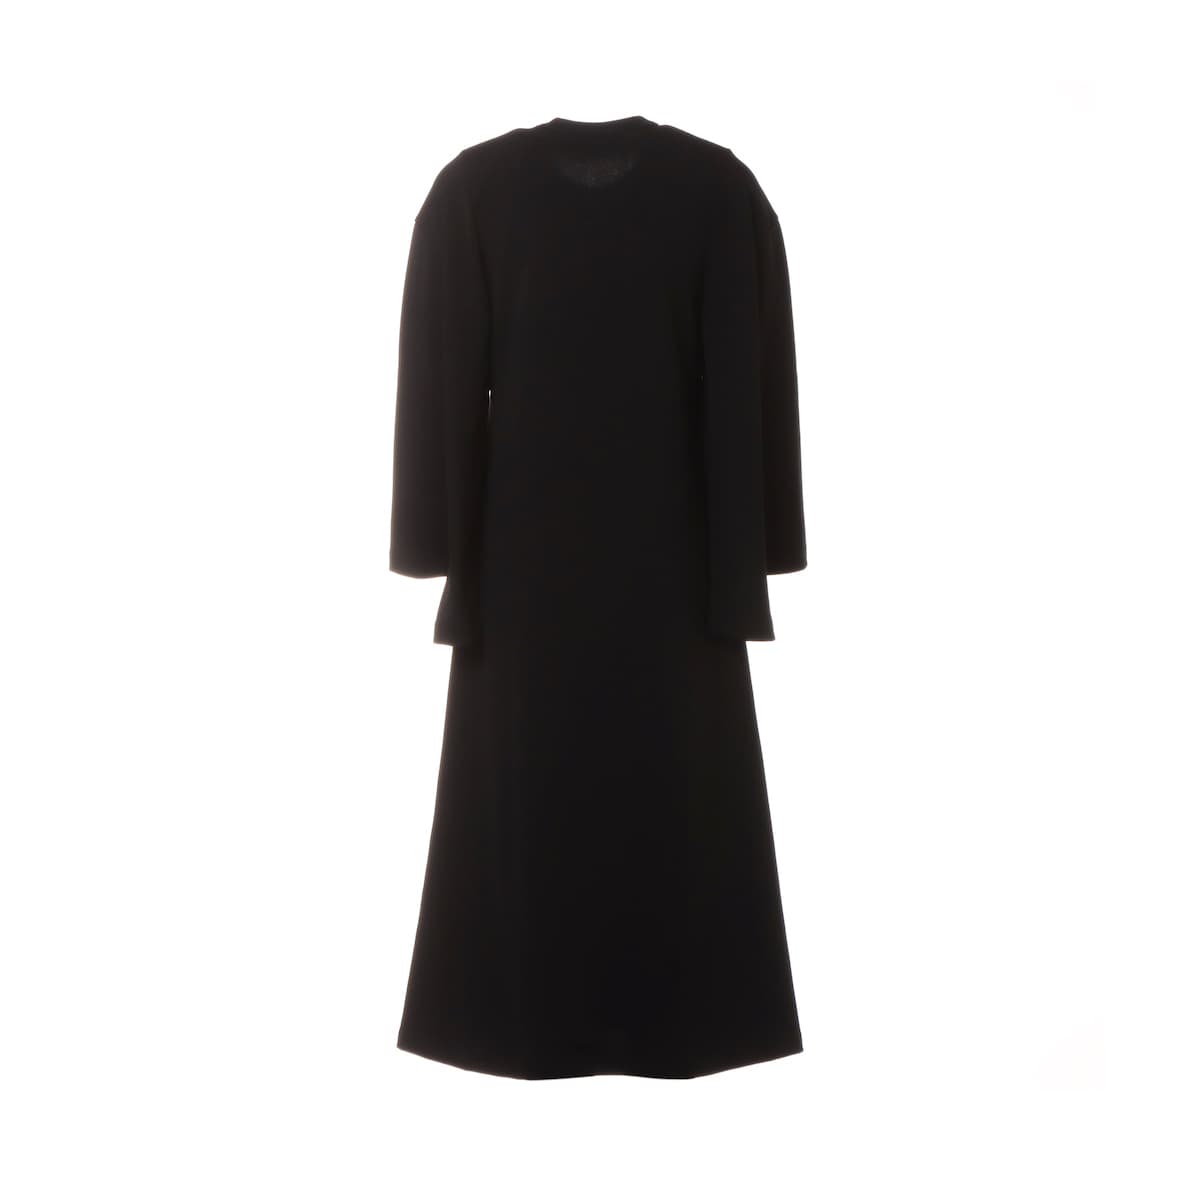 Comme des Garçons AD2019 Polyester Dress XS Ladies' Black  GD-T017 Transformable arm design